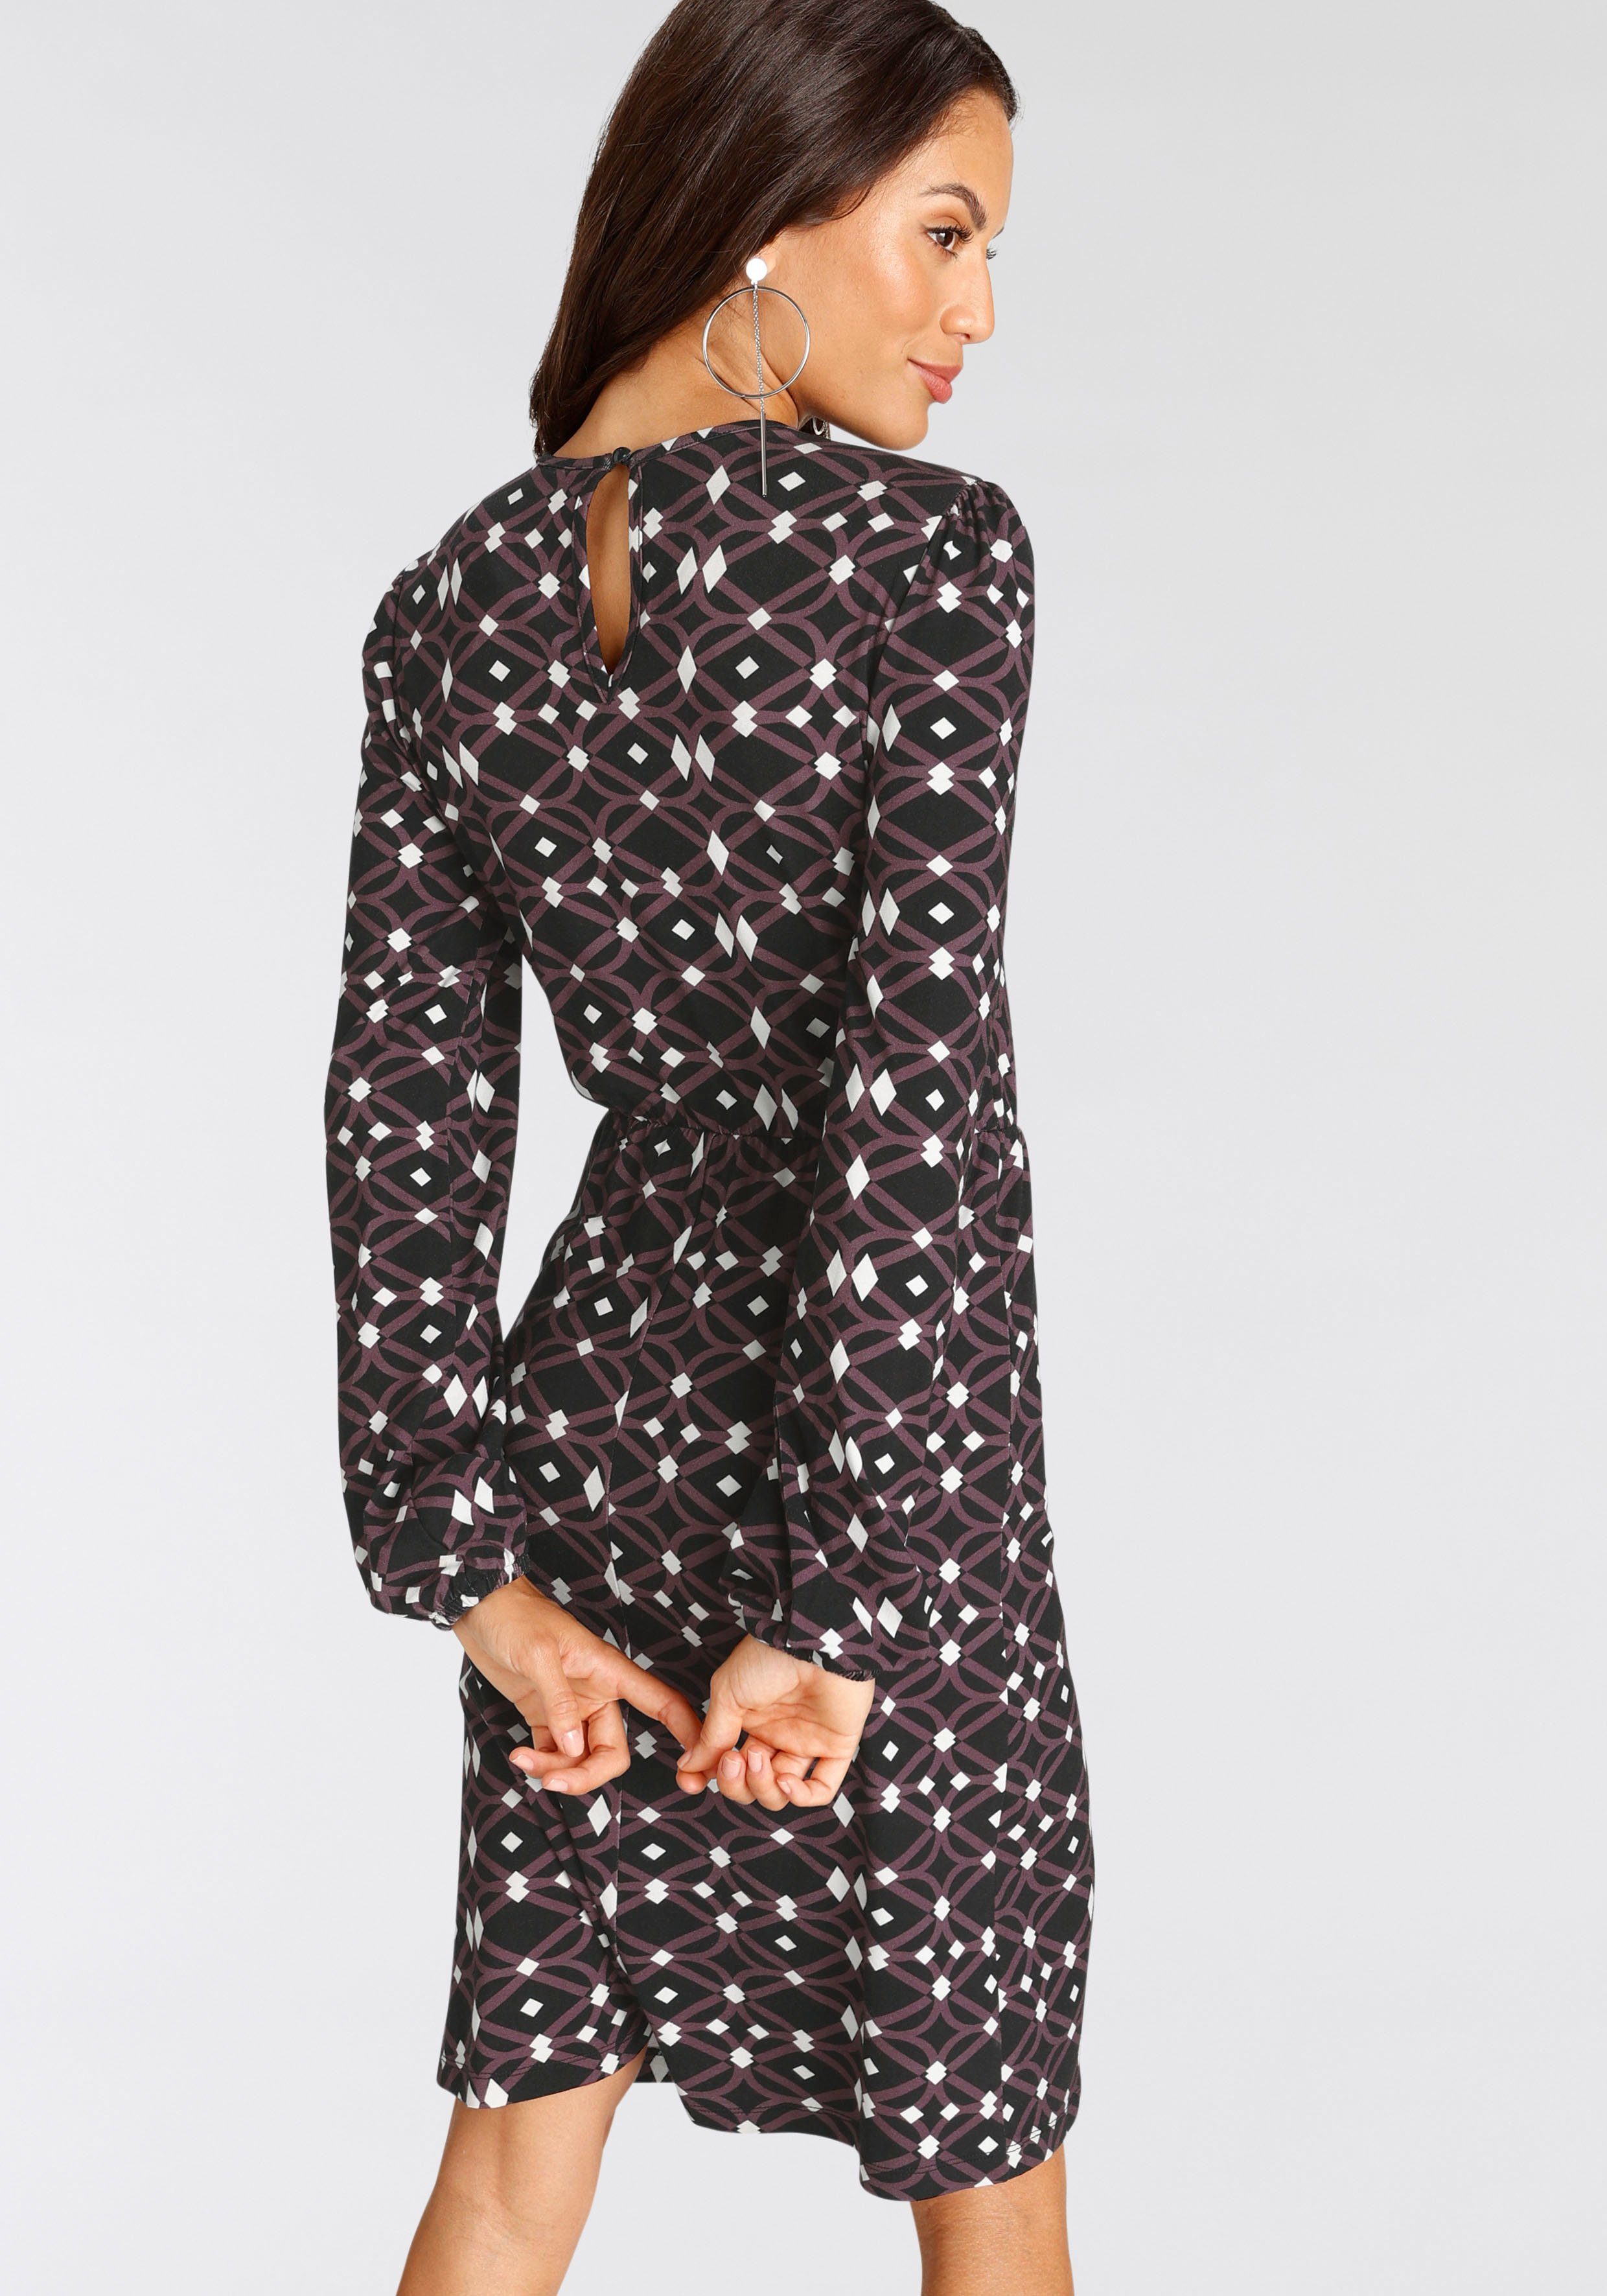 Allover-Print Jerseykleid mit Laura Scott schwarz-lila-gemustert